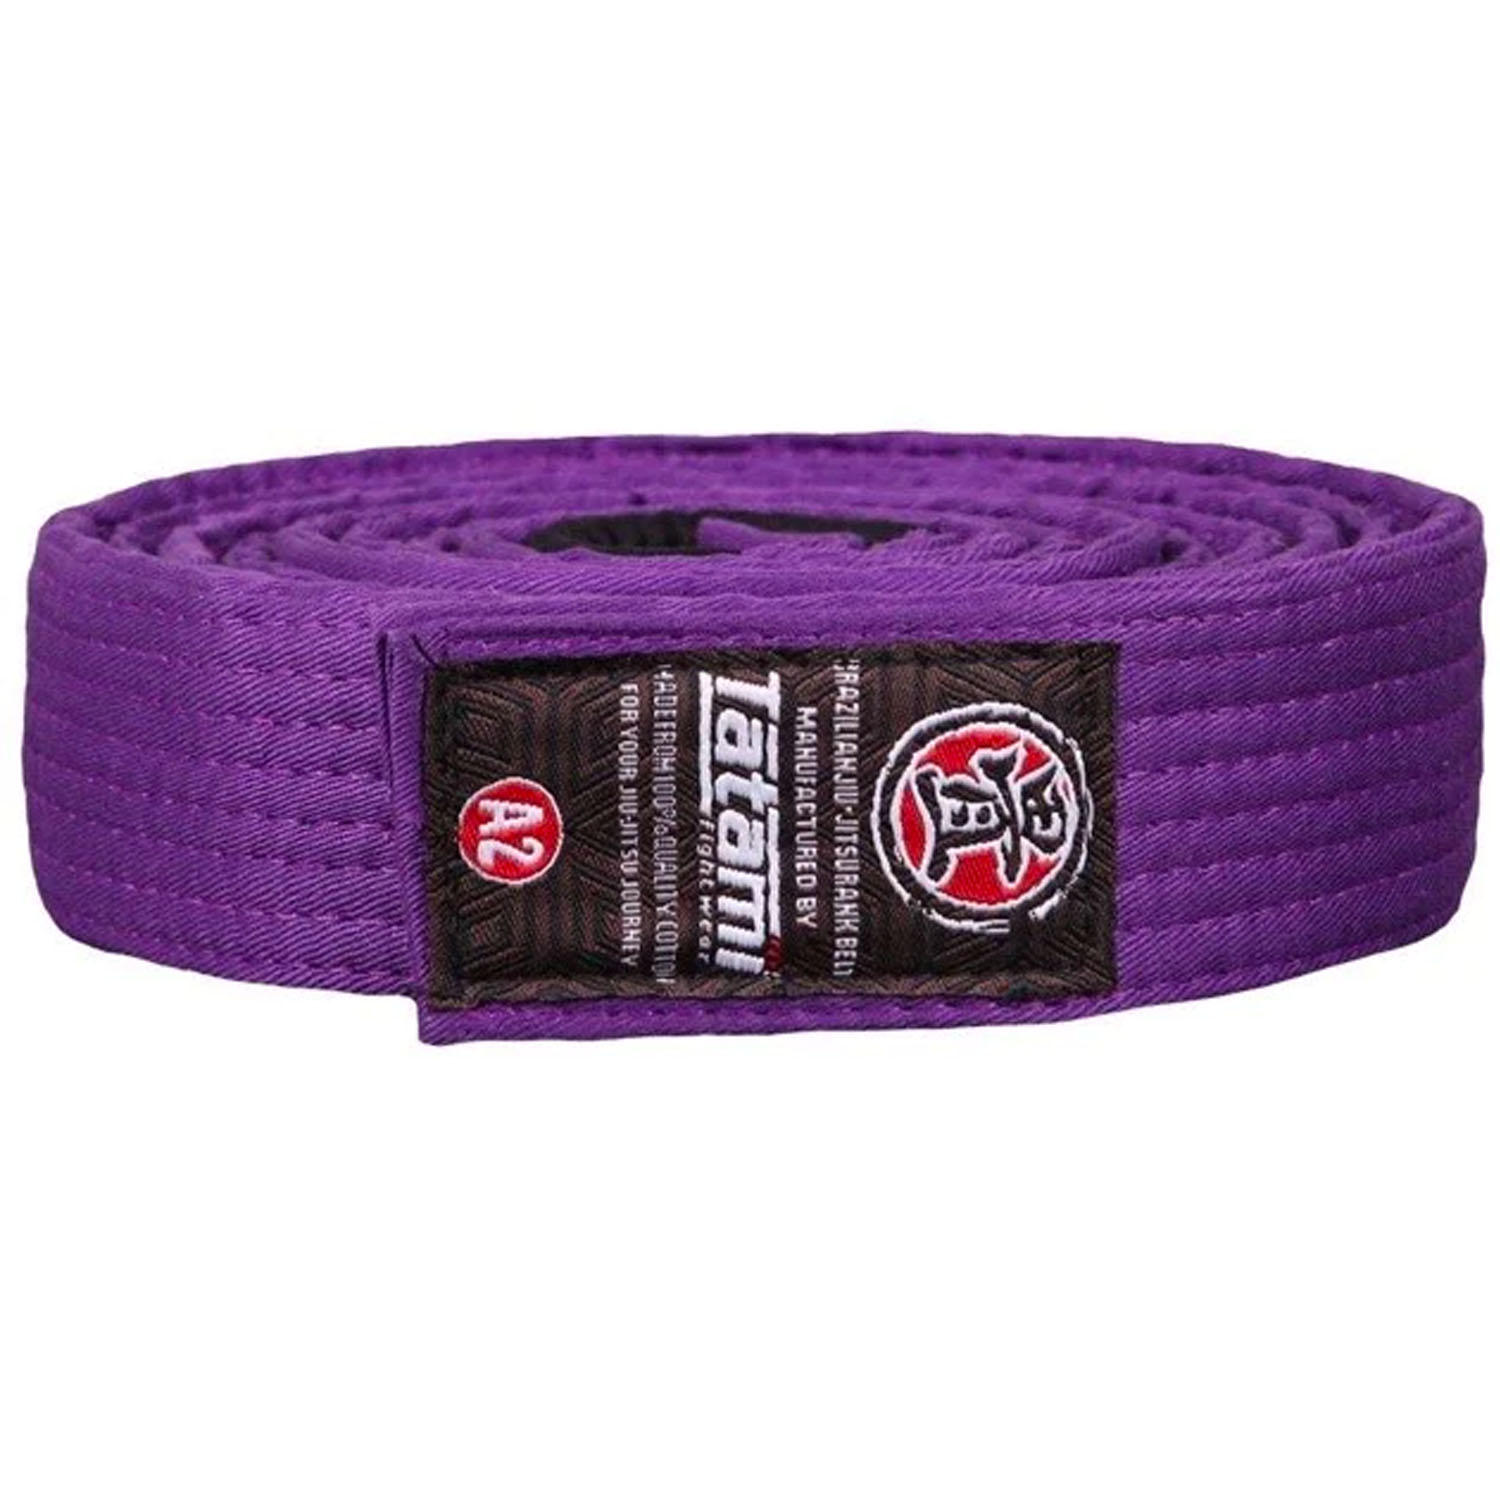 Tatami BJJ Belt, Rank Belt, purple